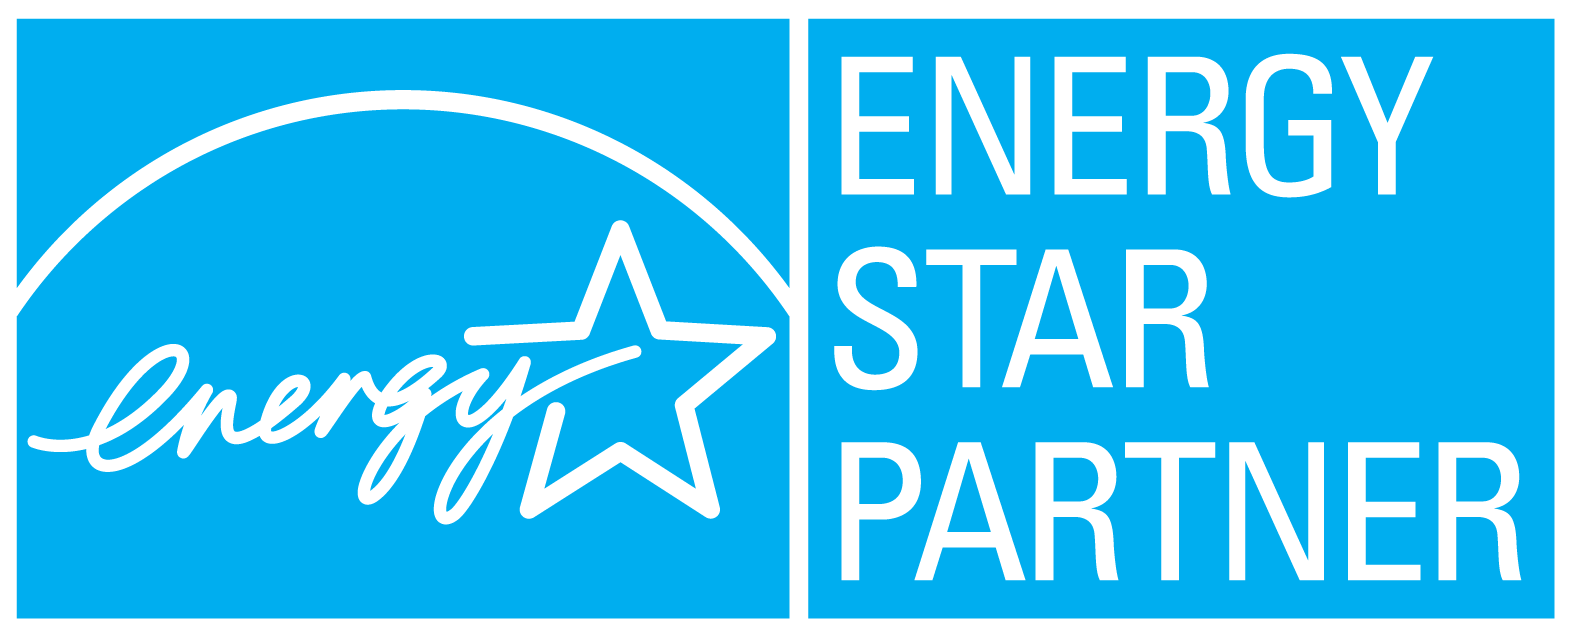 Energy Star Partner : 